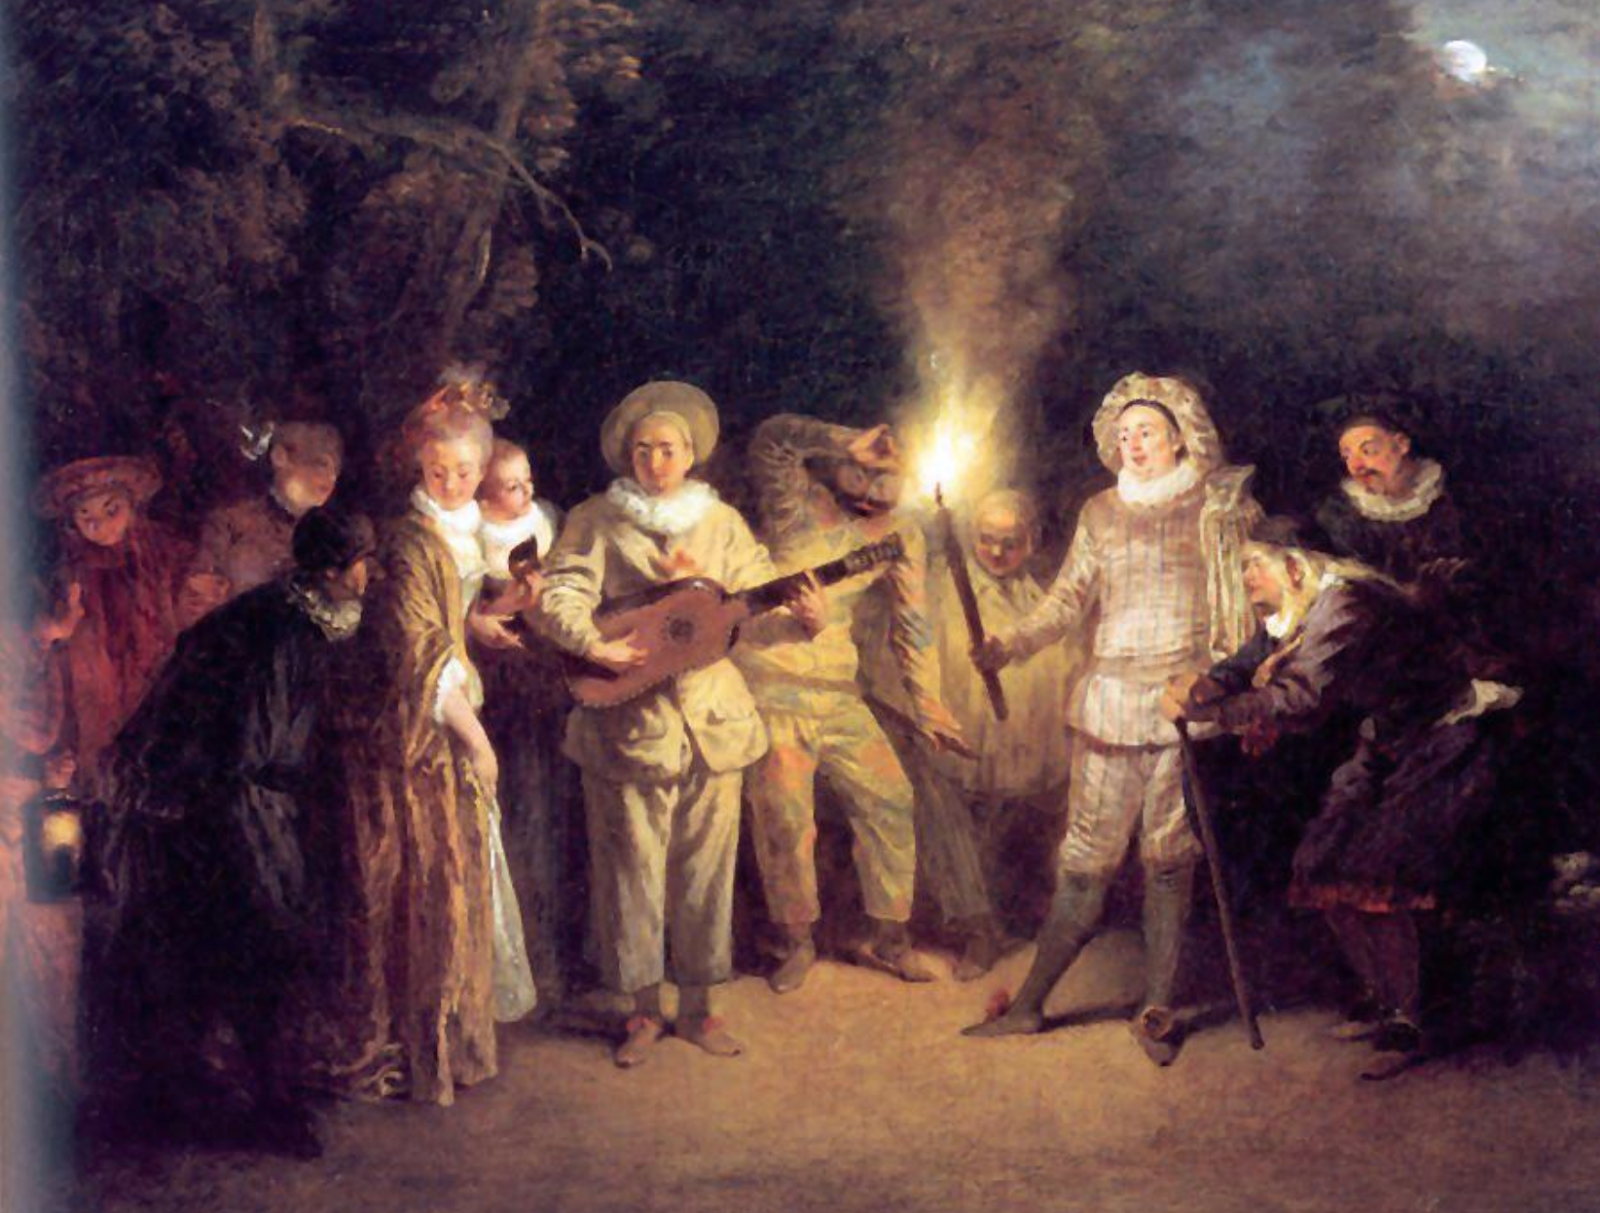 The Watteau painting L’Amour au Théâtre Italien